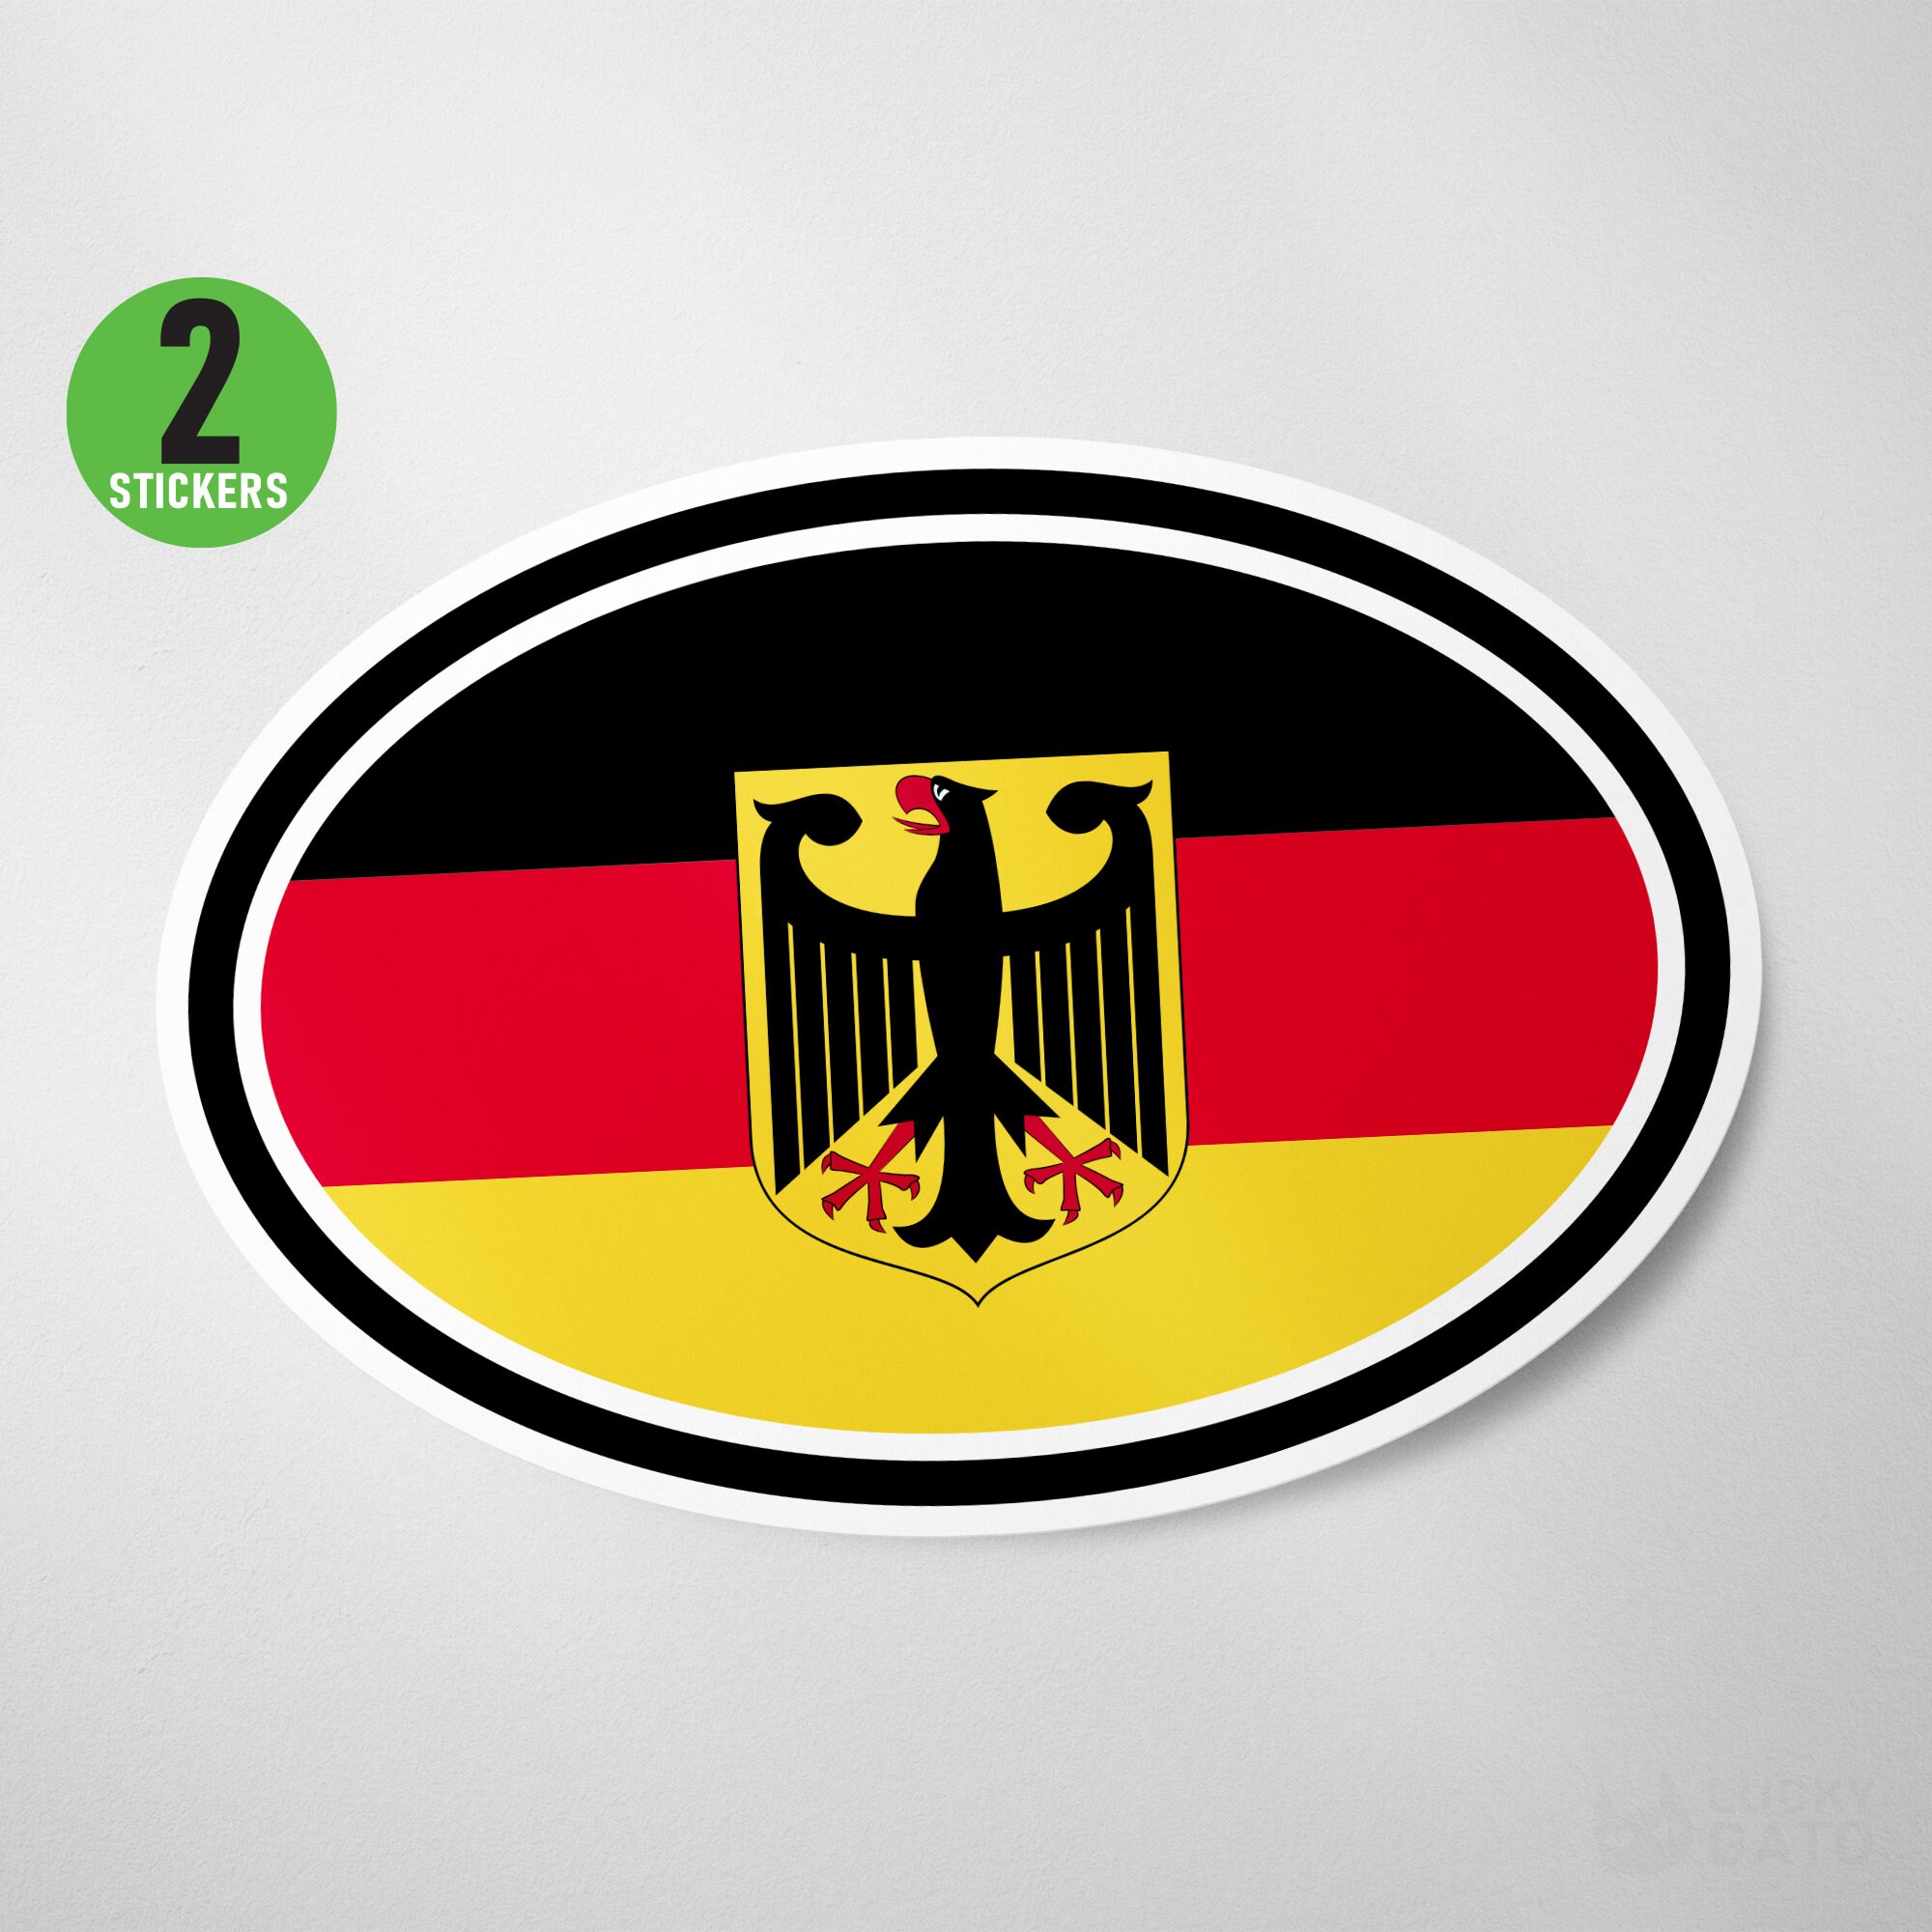 Deutschland' Sticker